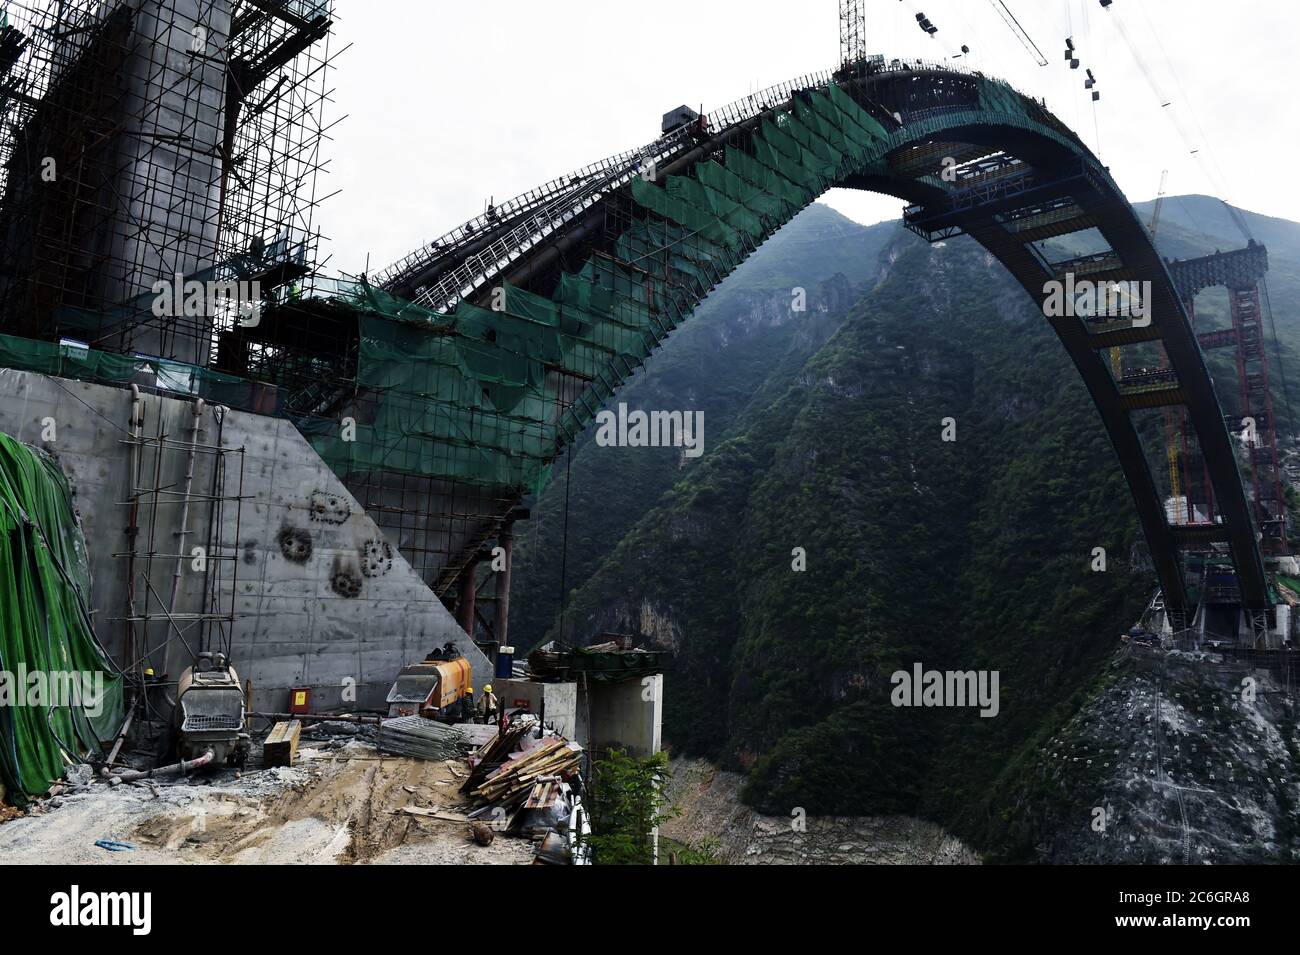 El puente Daning River está en construcción en el condado de Wushan, Chongqing, China, 28 de junio de 2020. Foto de stock